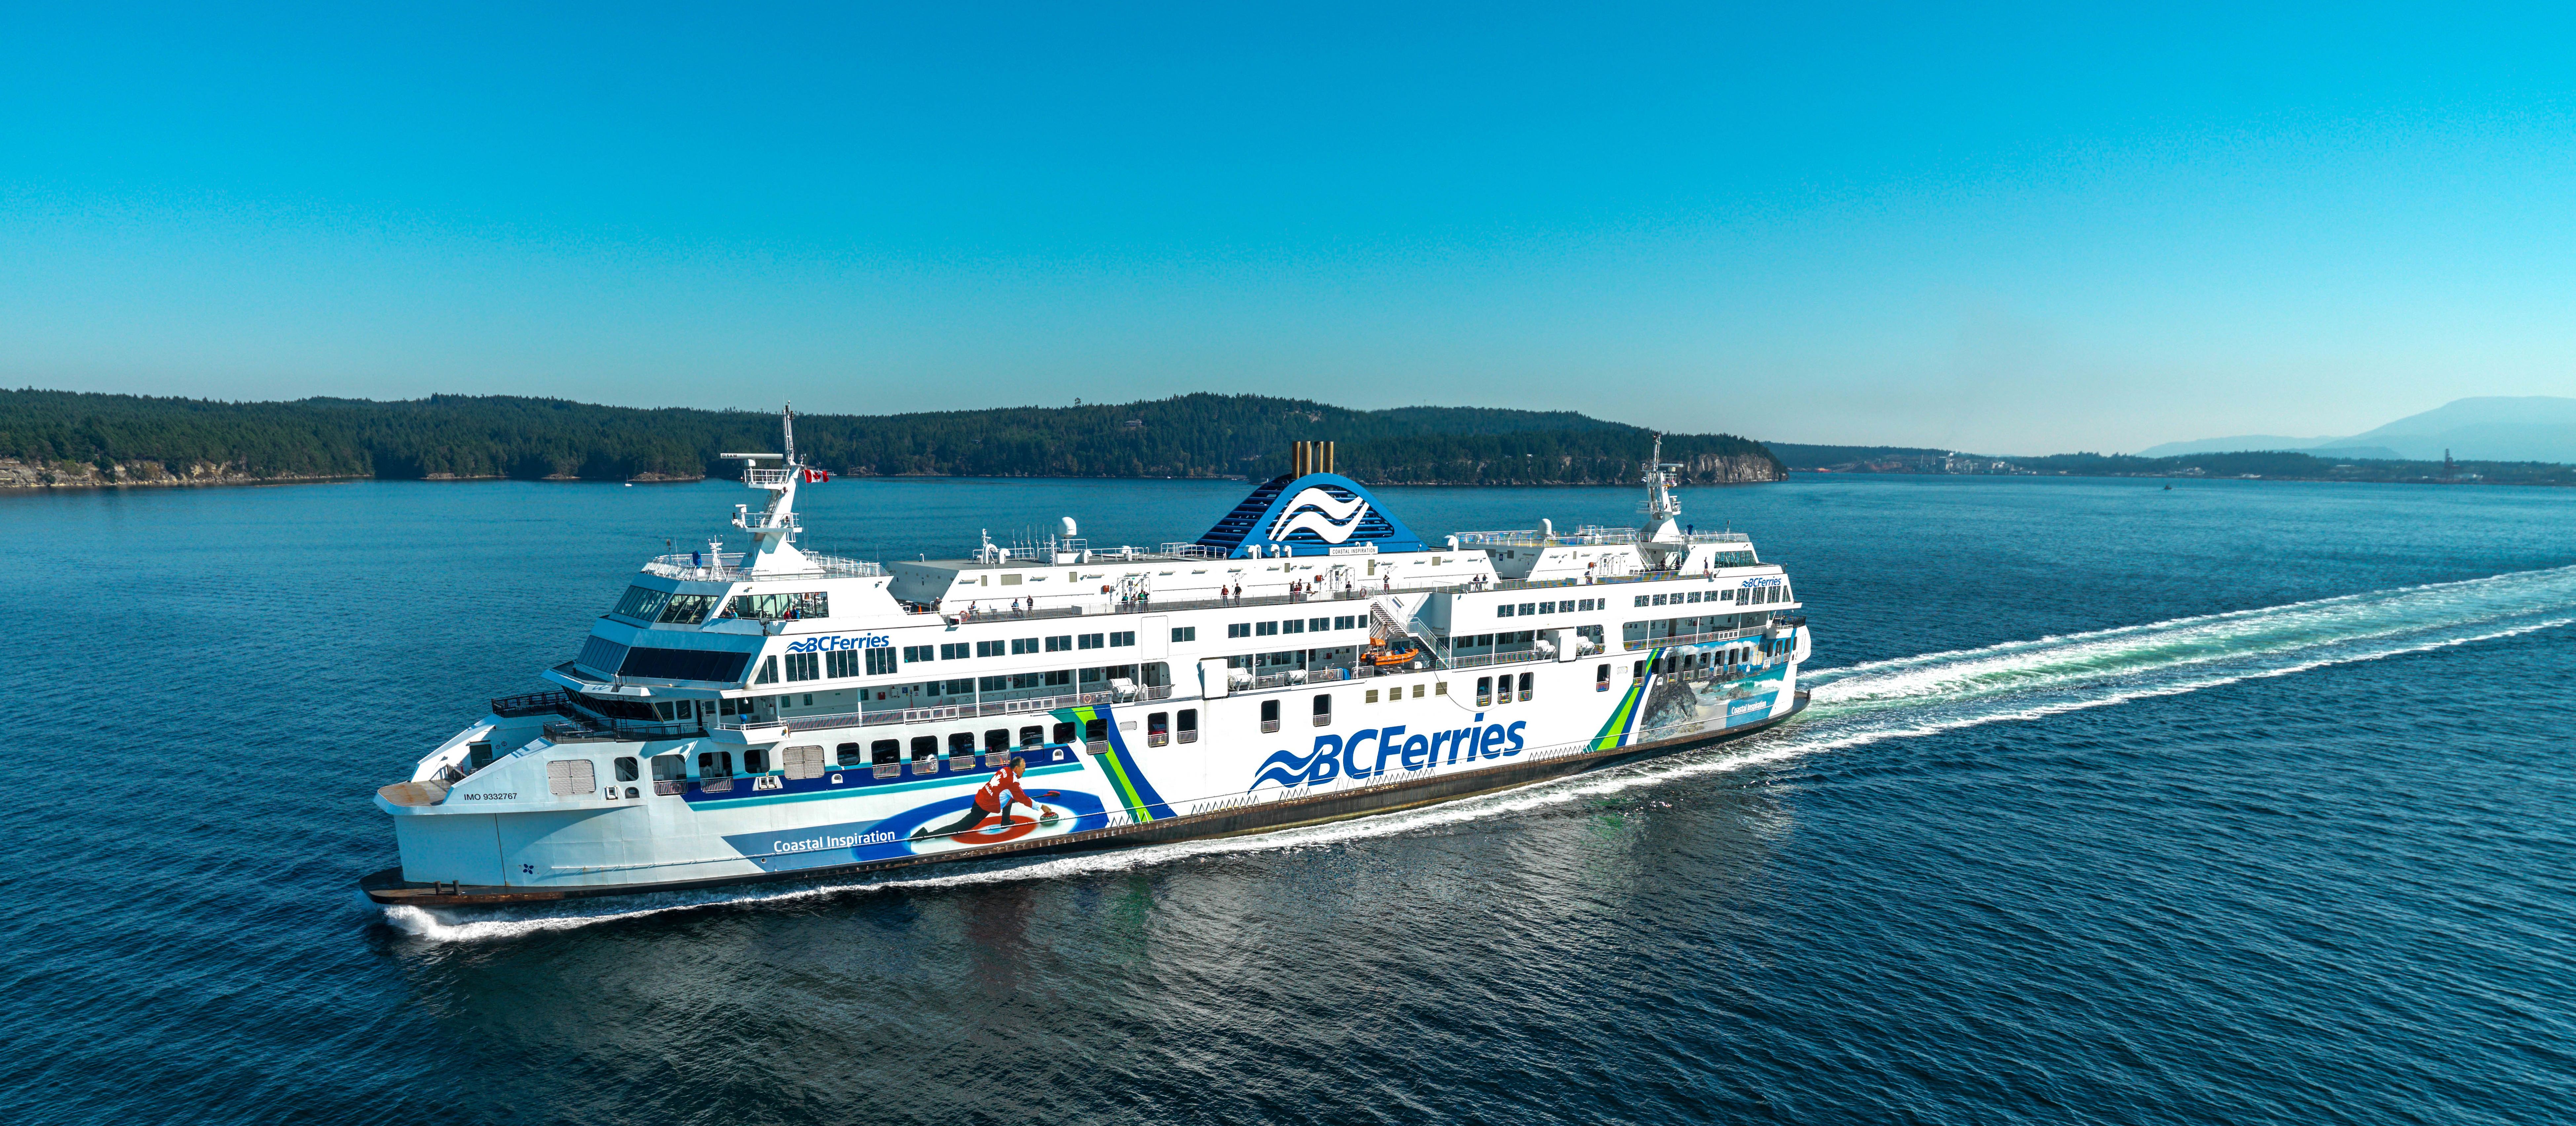 Coastal Inspiration der BC Ferries